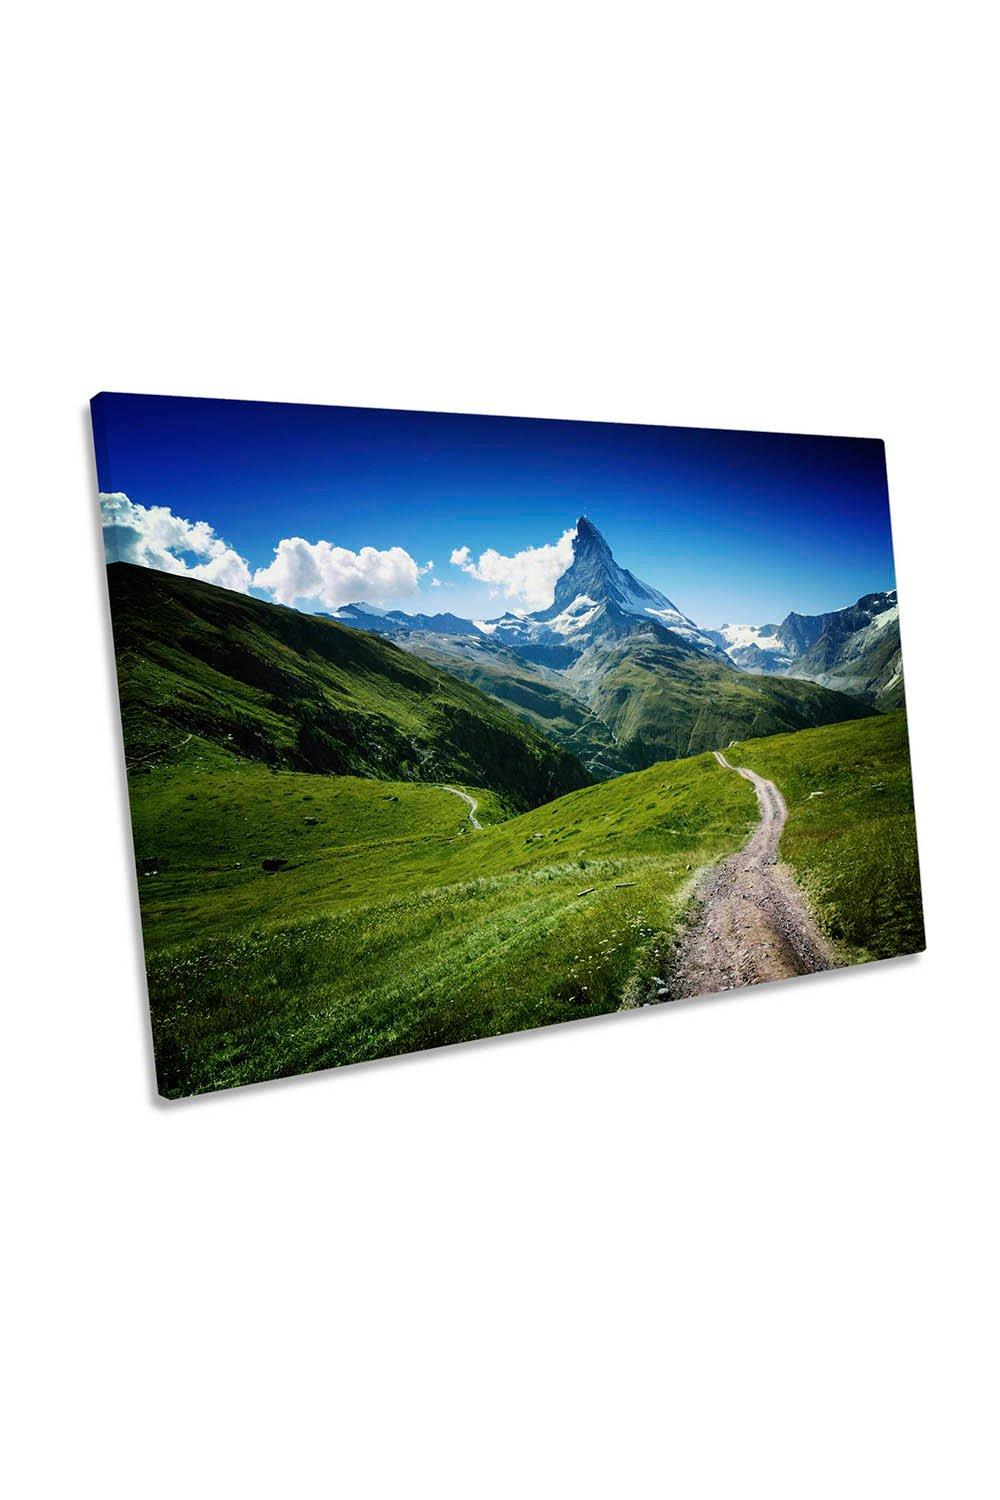 Matterhorn Mountain Landscape Canvas Wall Art Picture Print